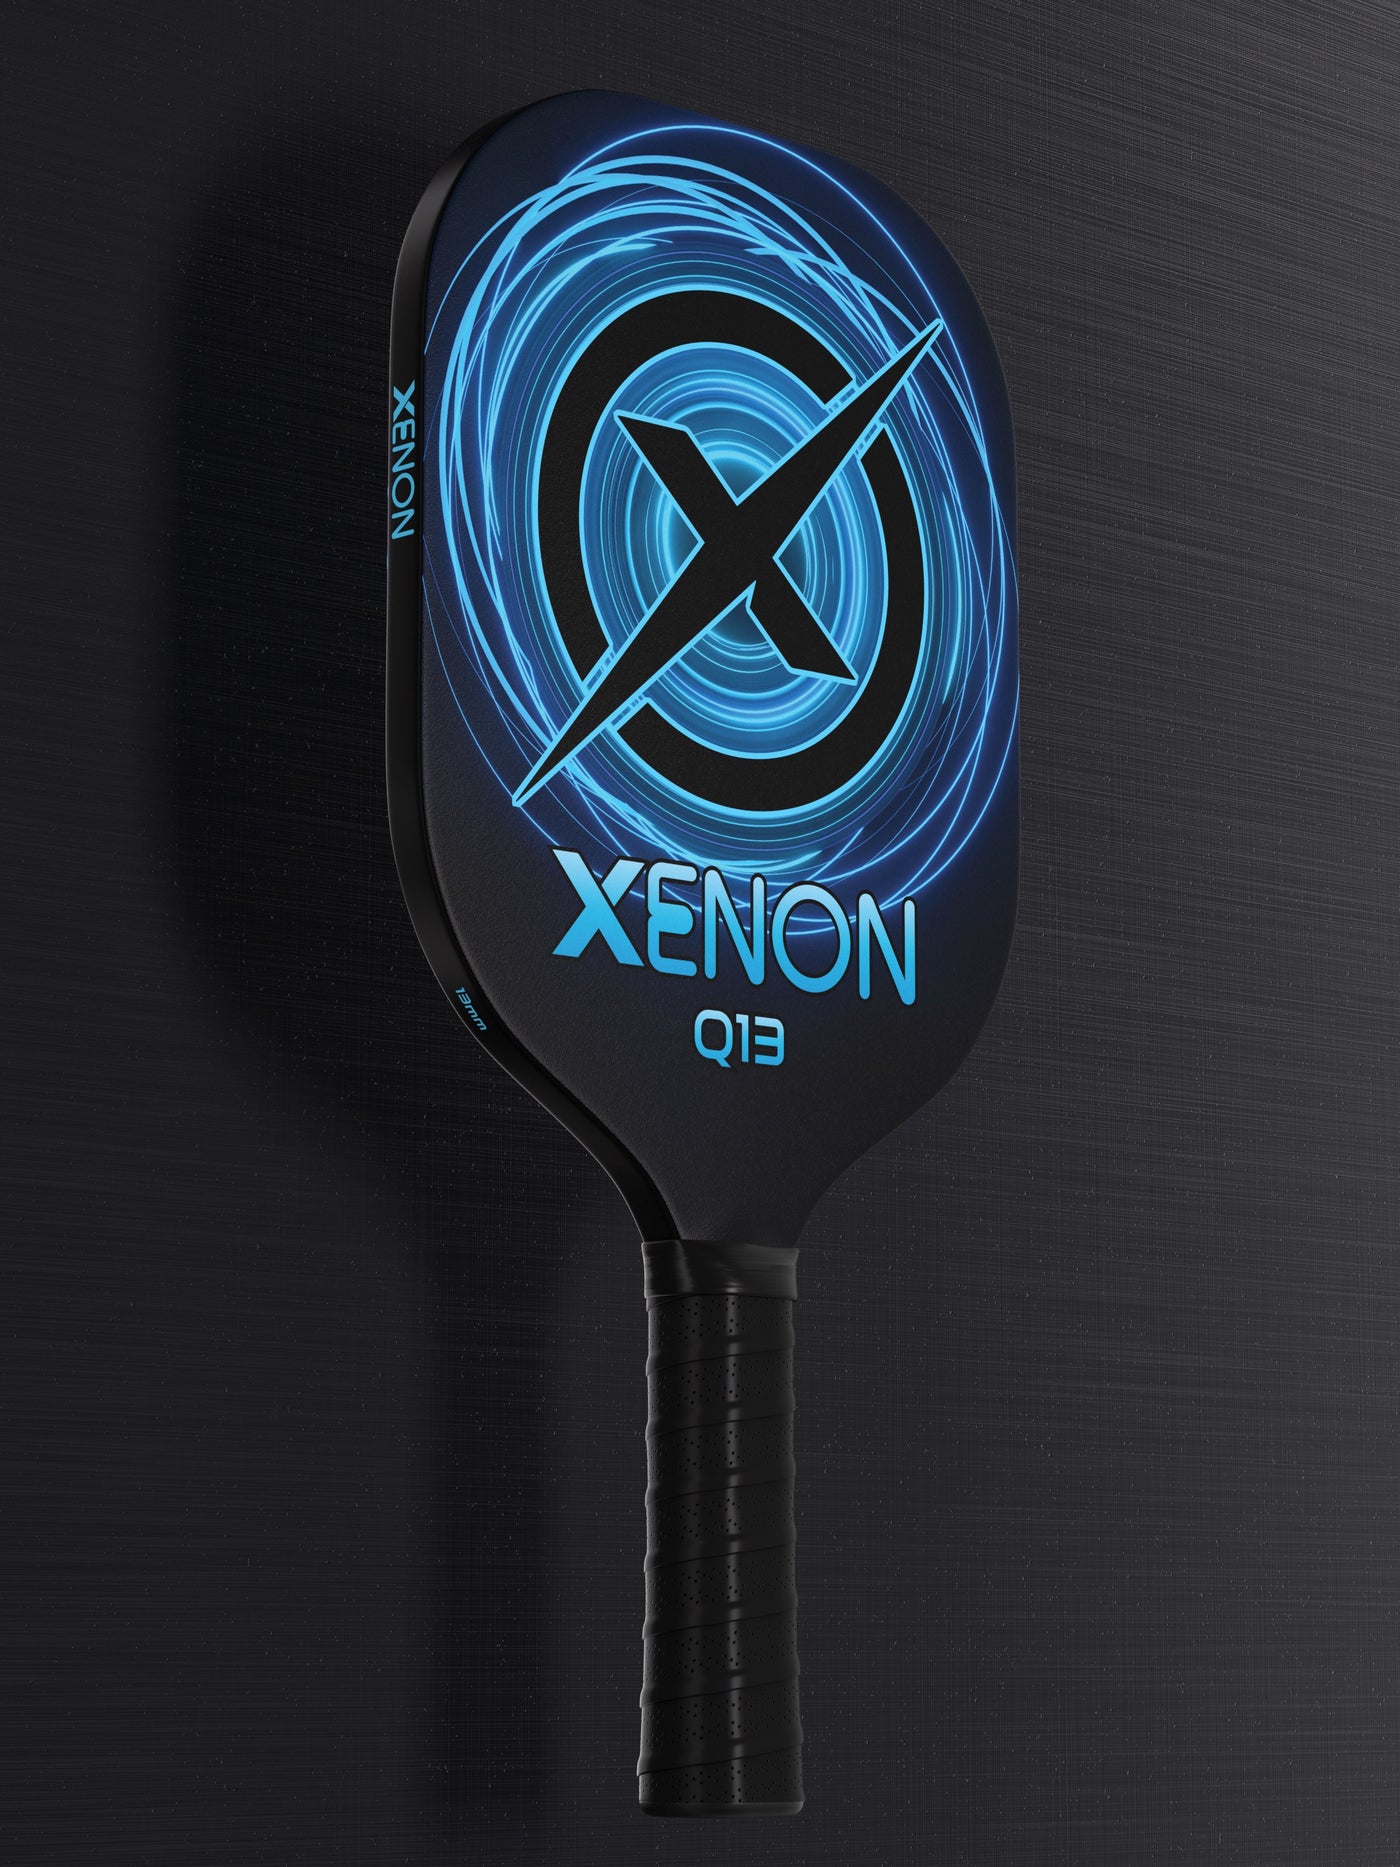 Xenon Q13 pickleball paddle demos